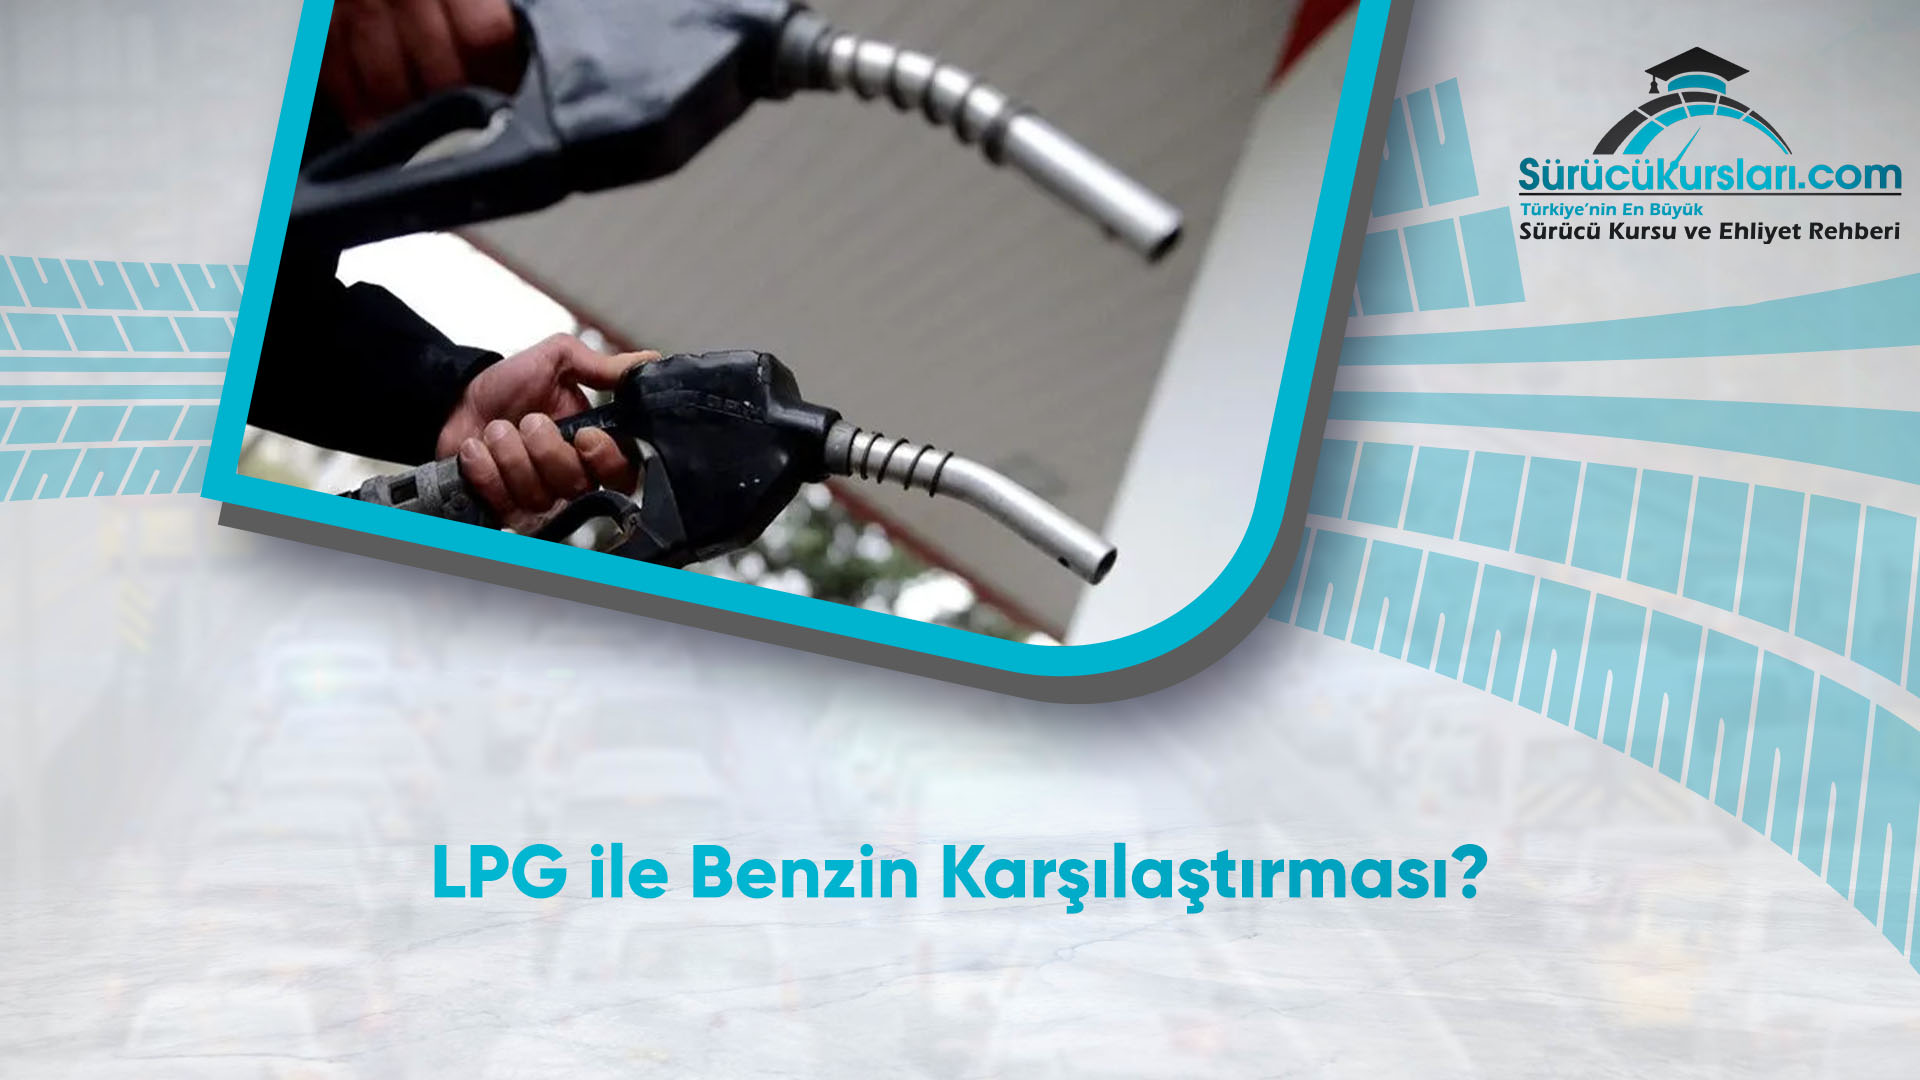 LPG ile Benzin Karşılaştırması